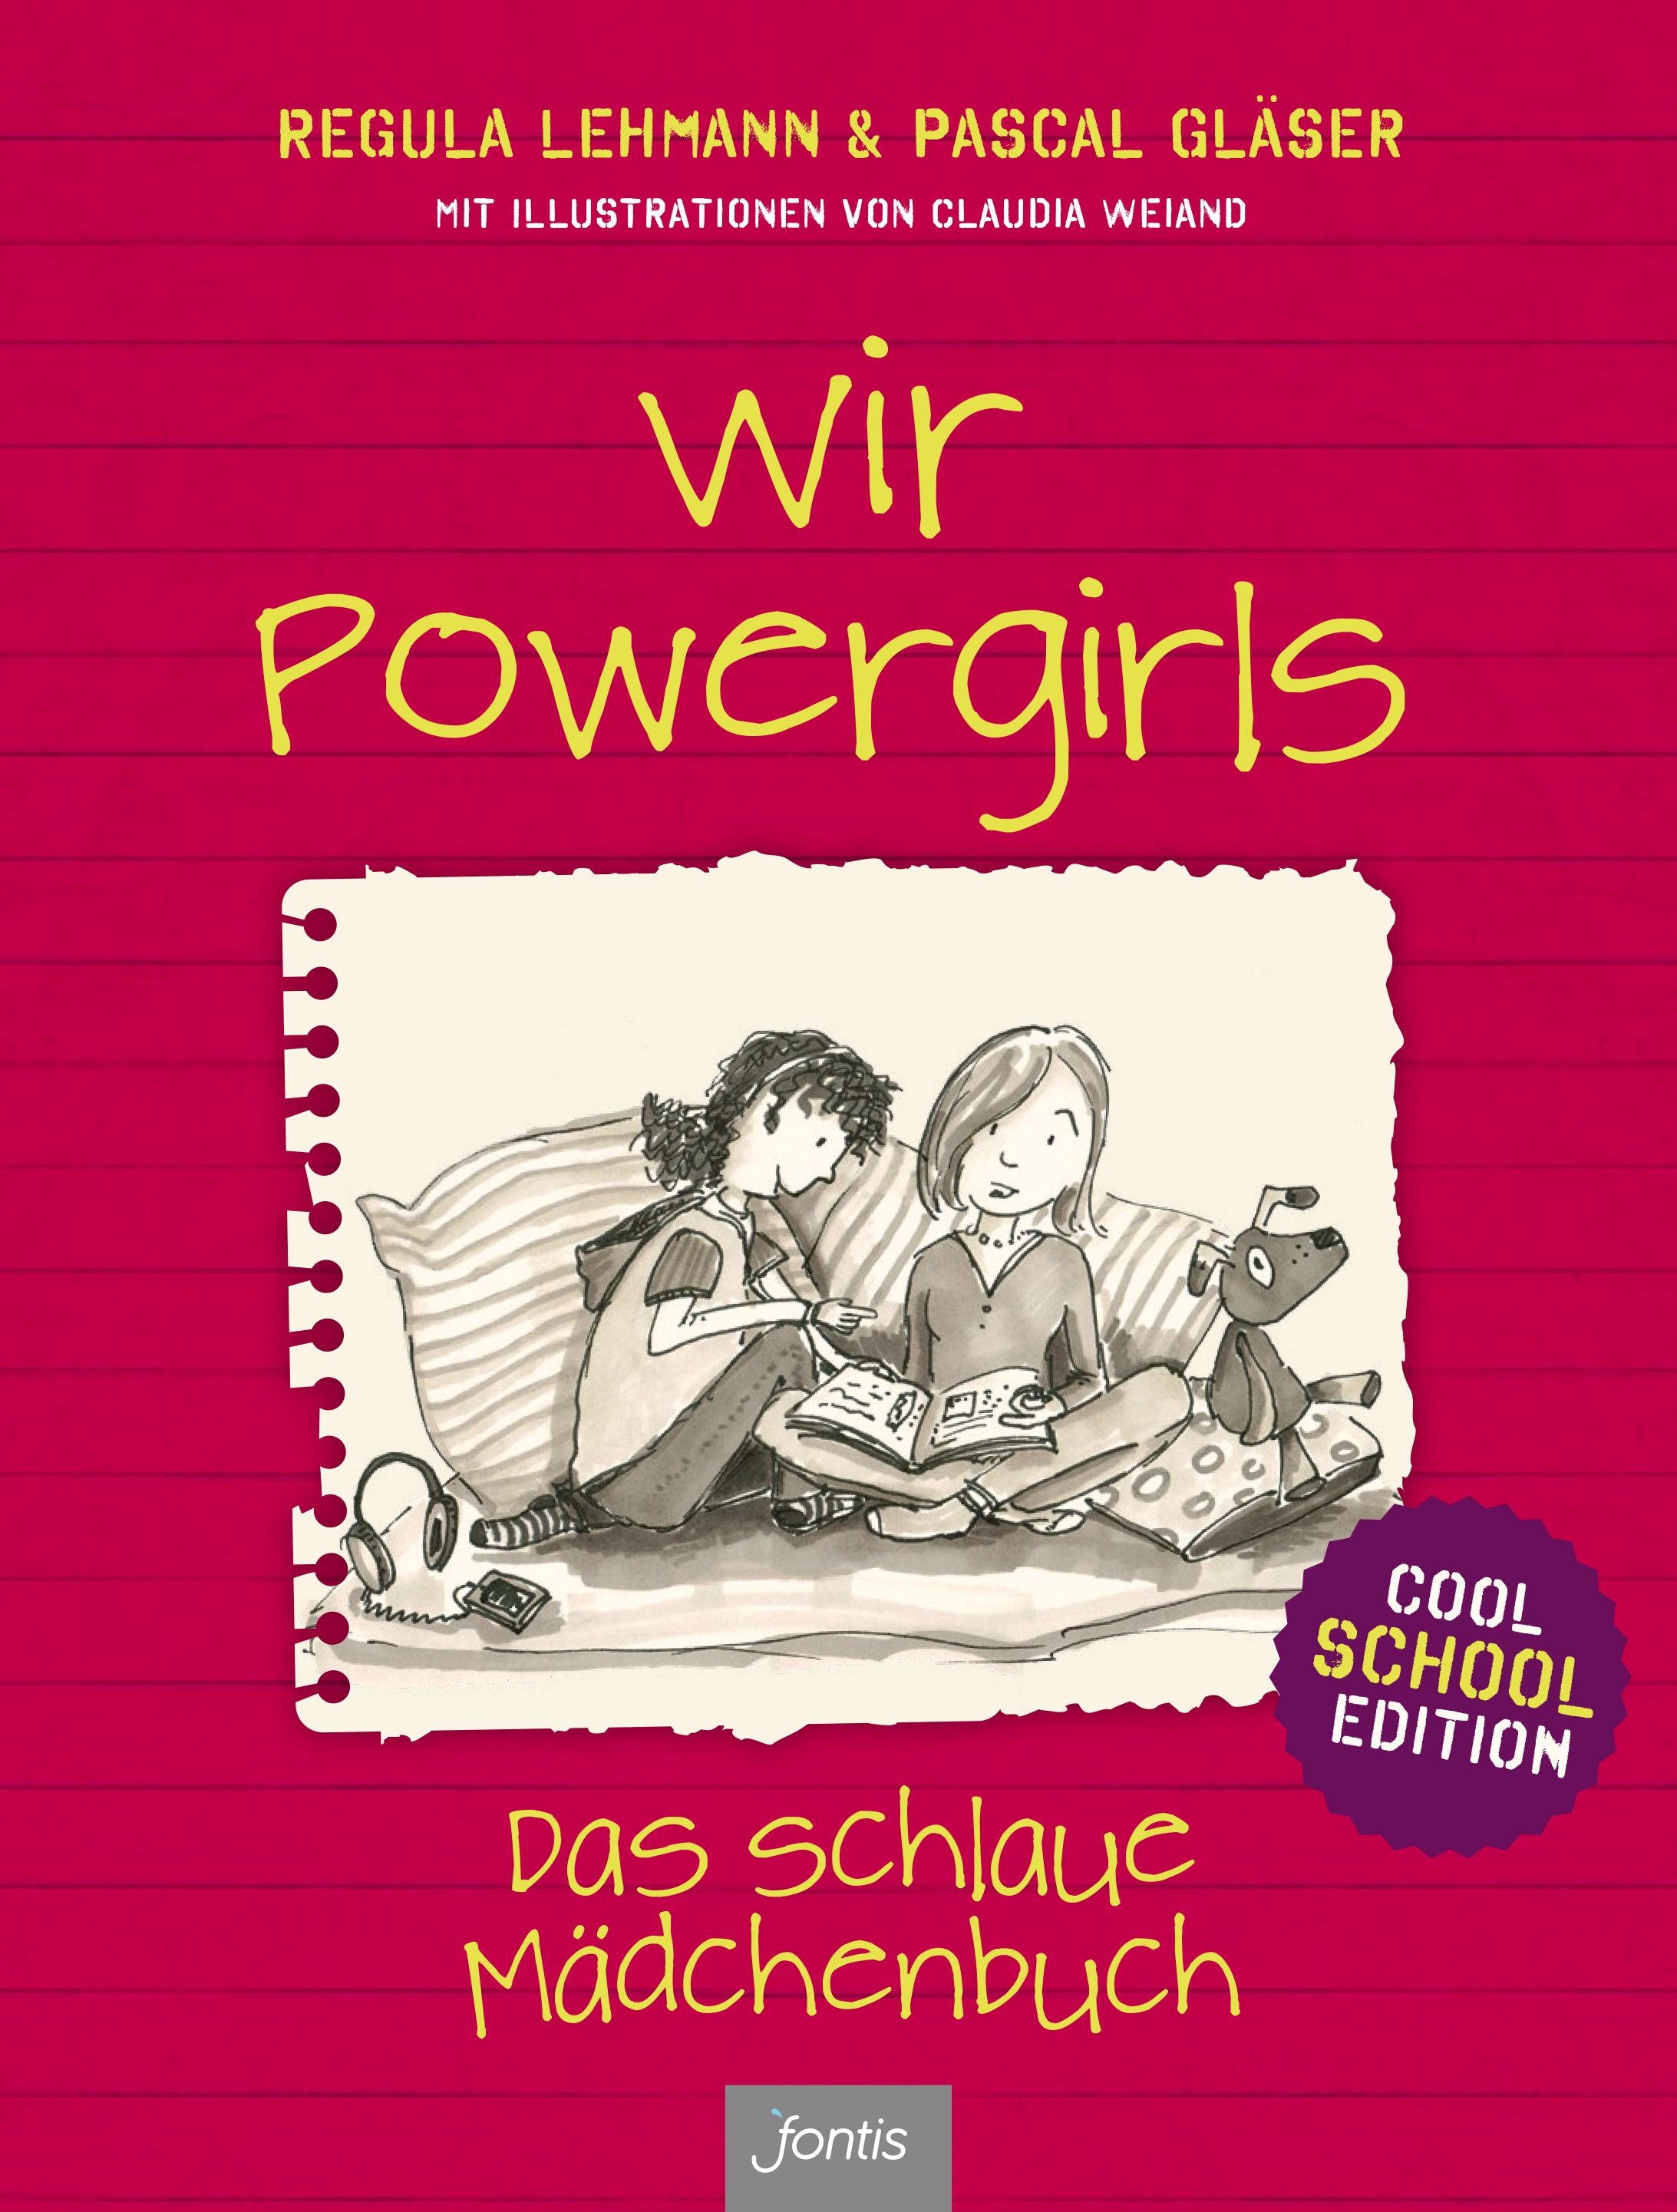 Wir Powergirls - Cool School Edition|Das schlaue Mädchenbuch